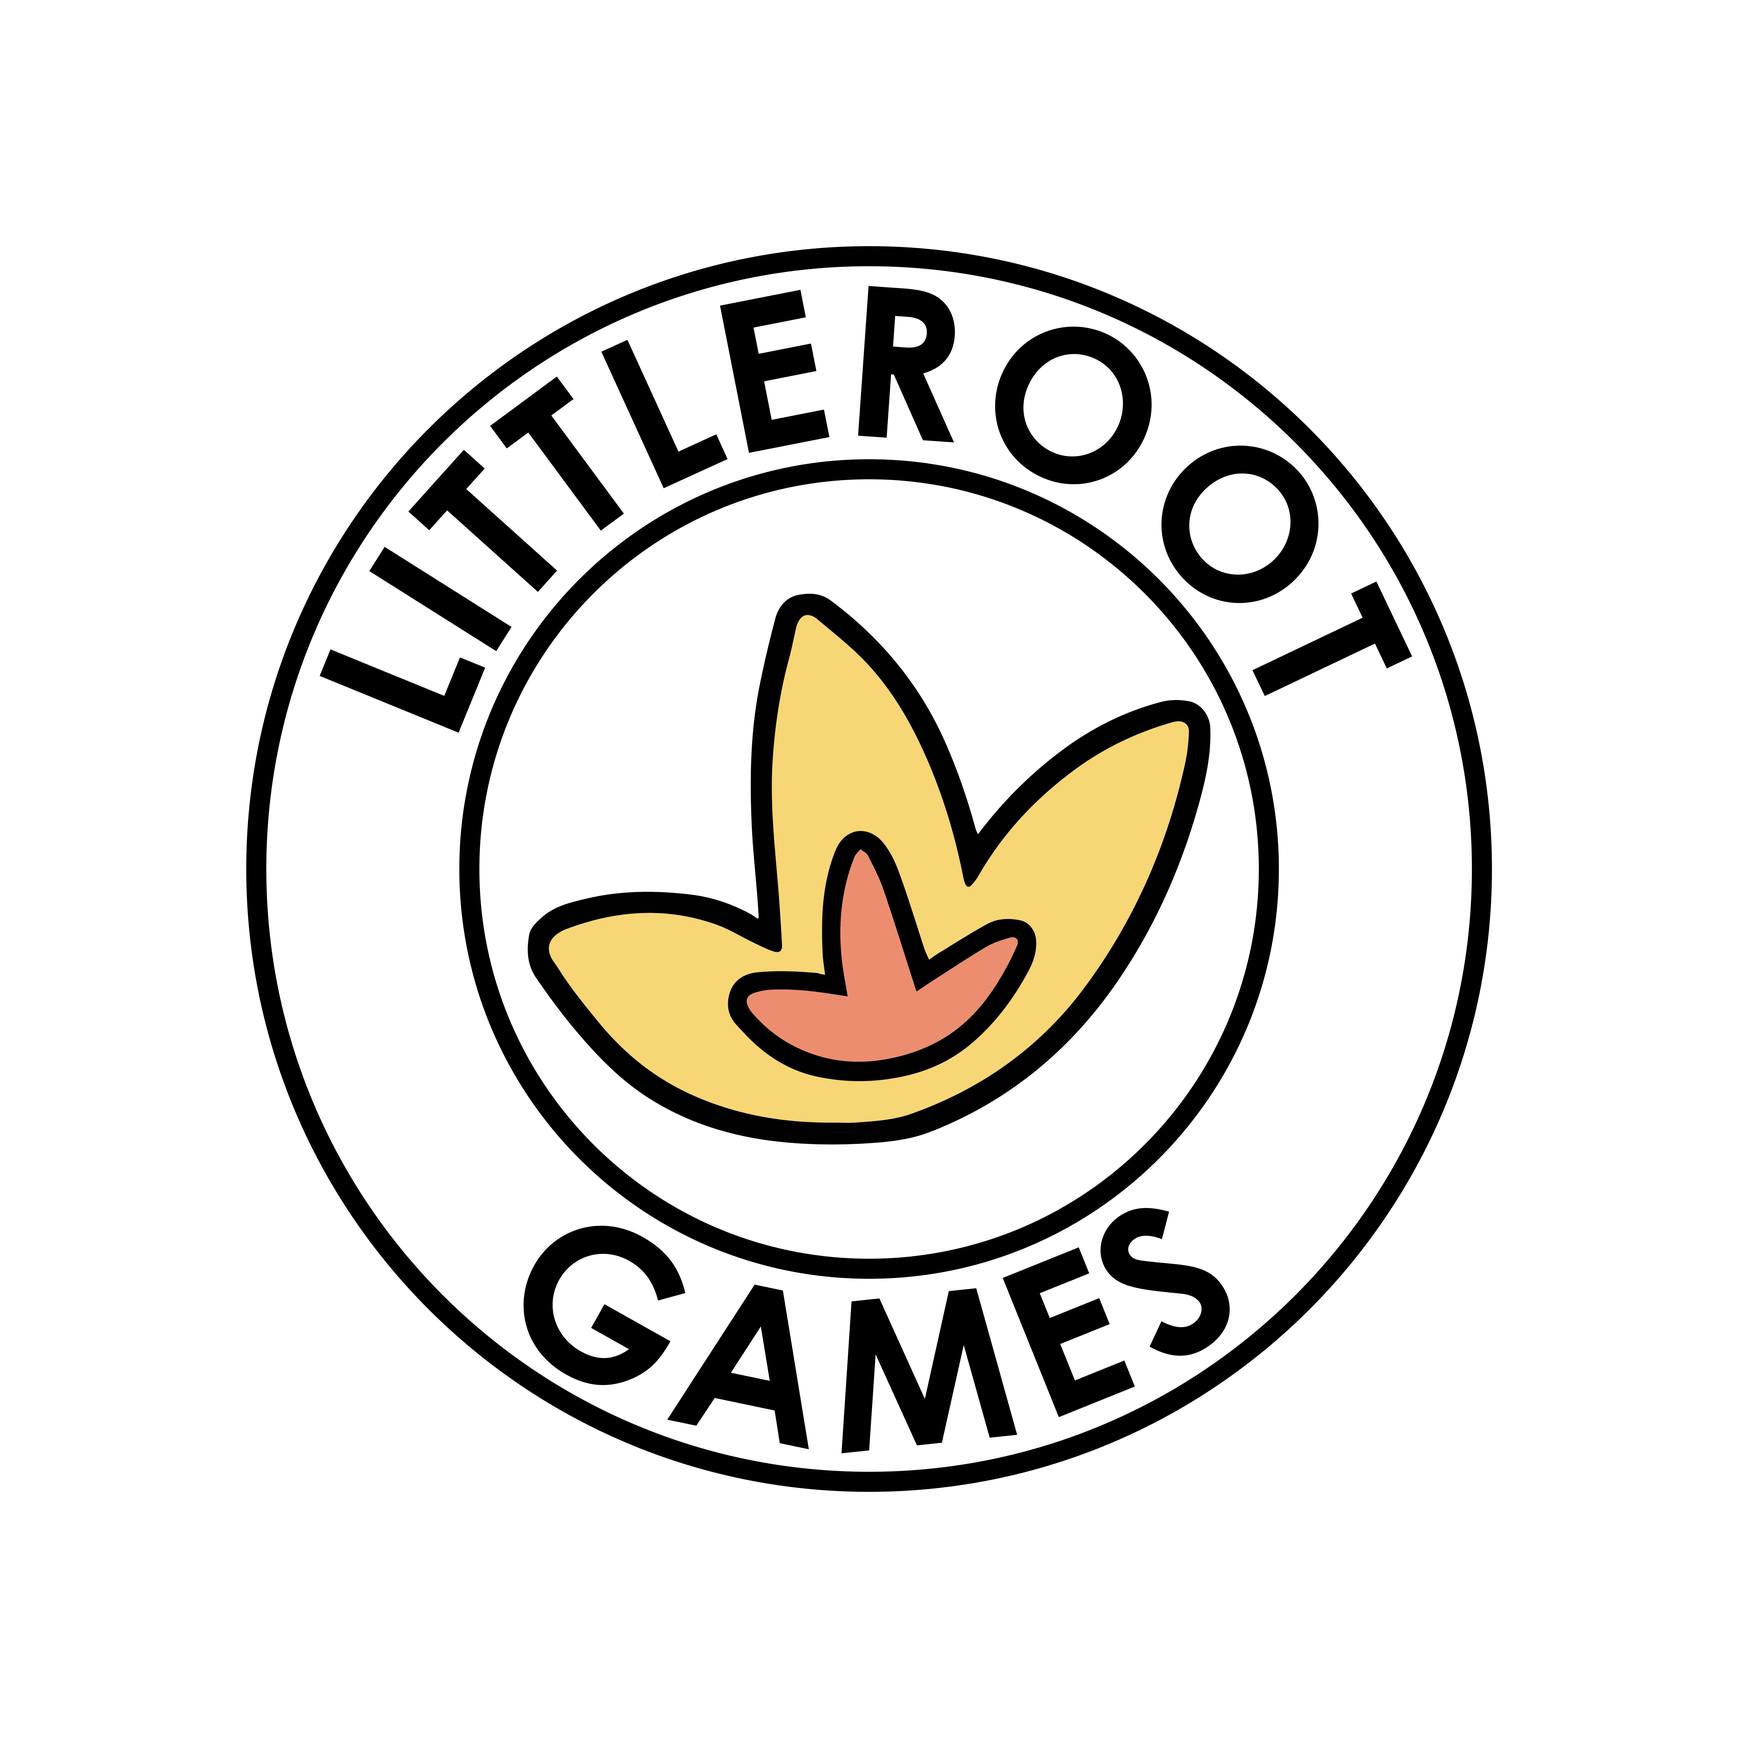 Littleroot Games/